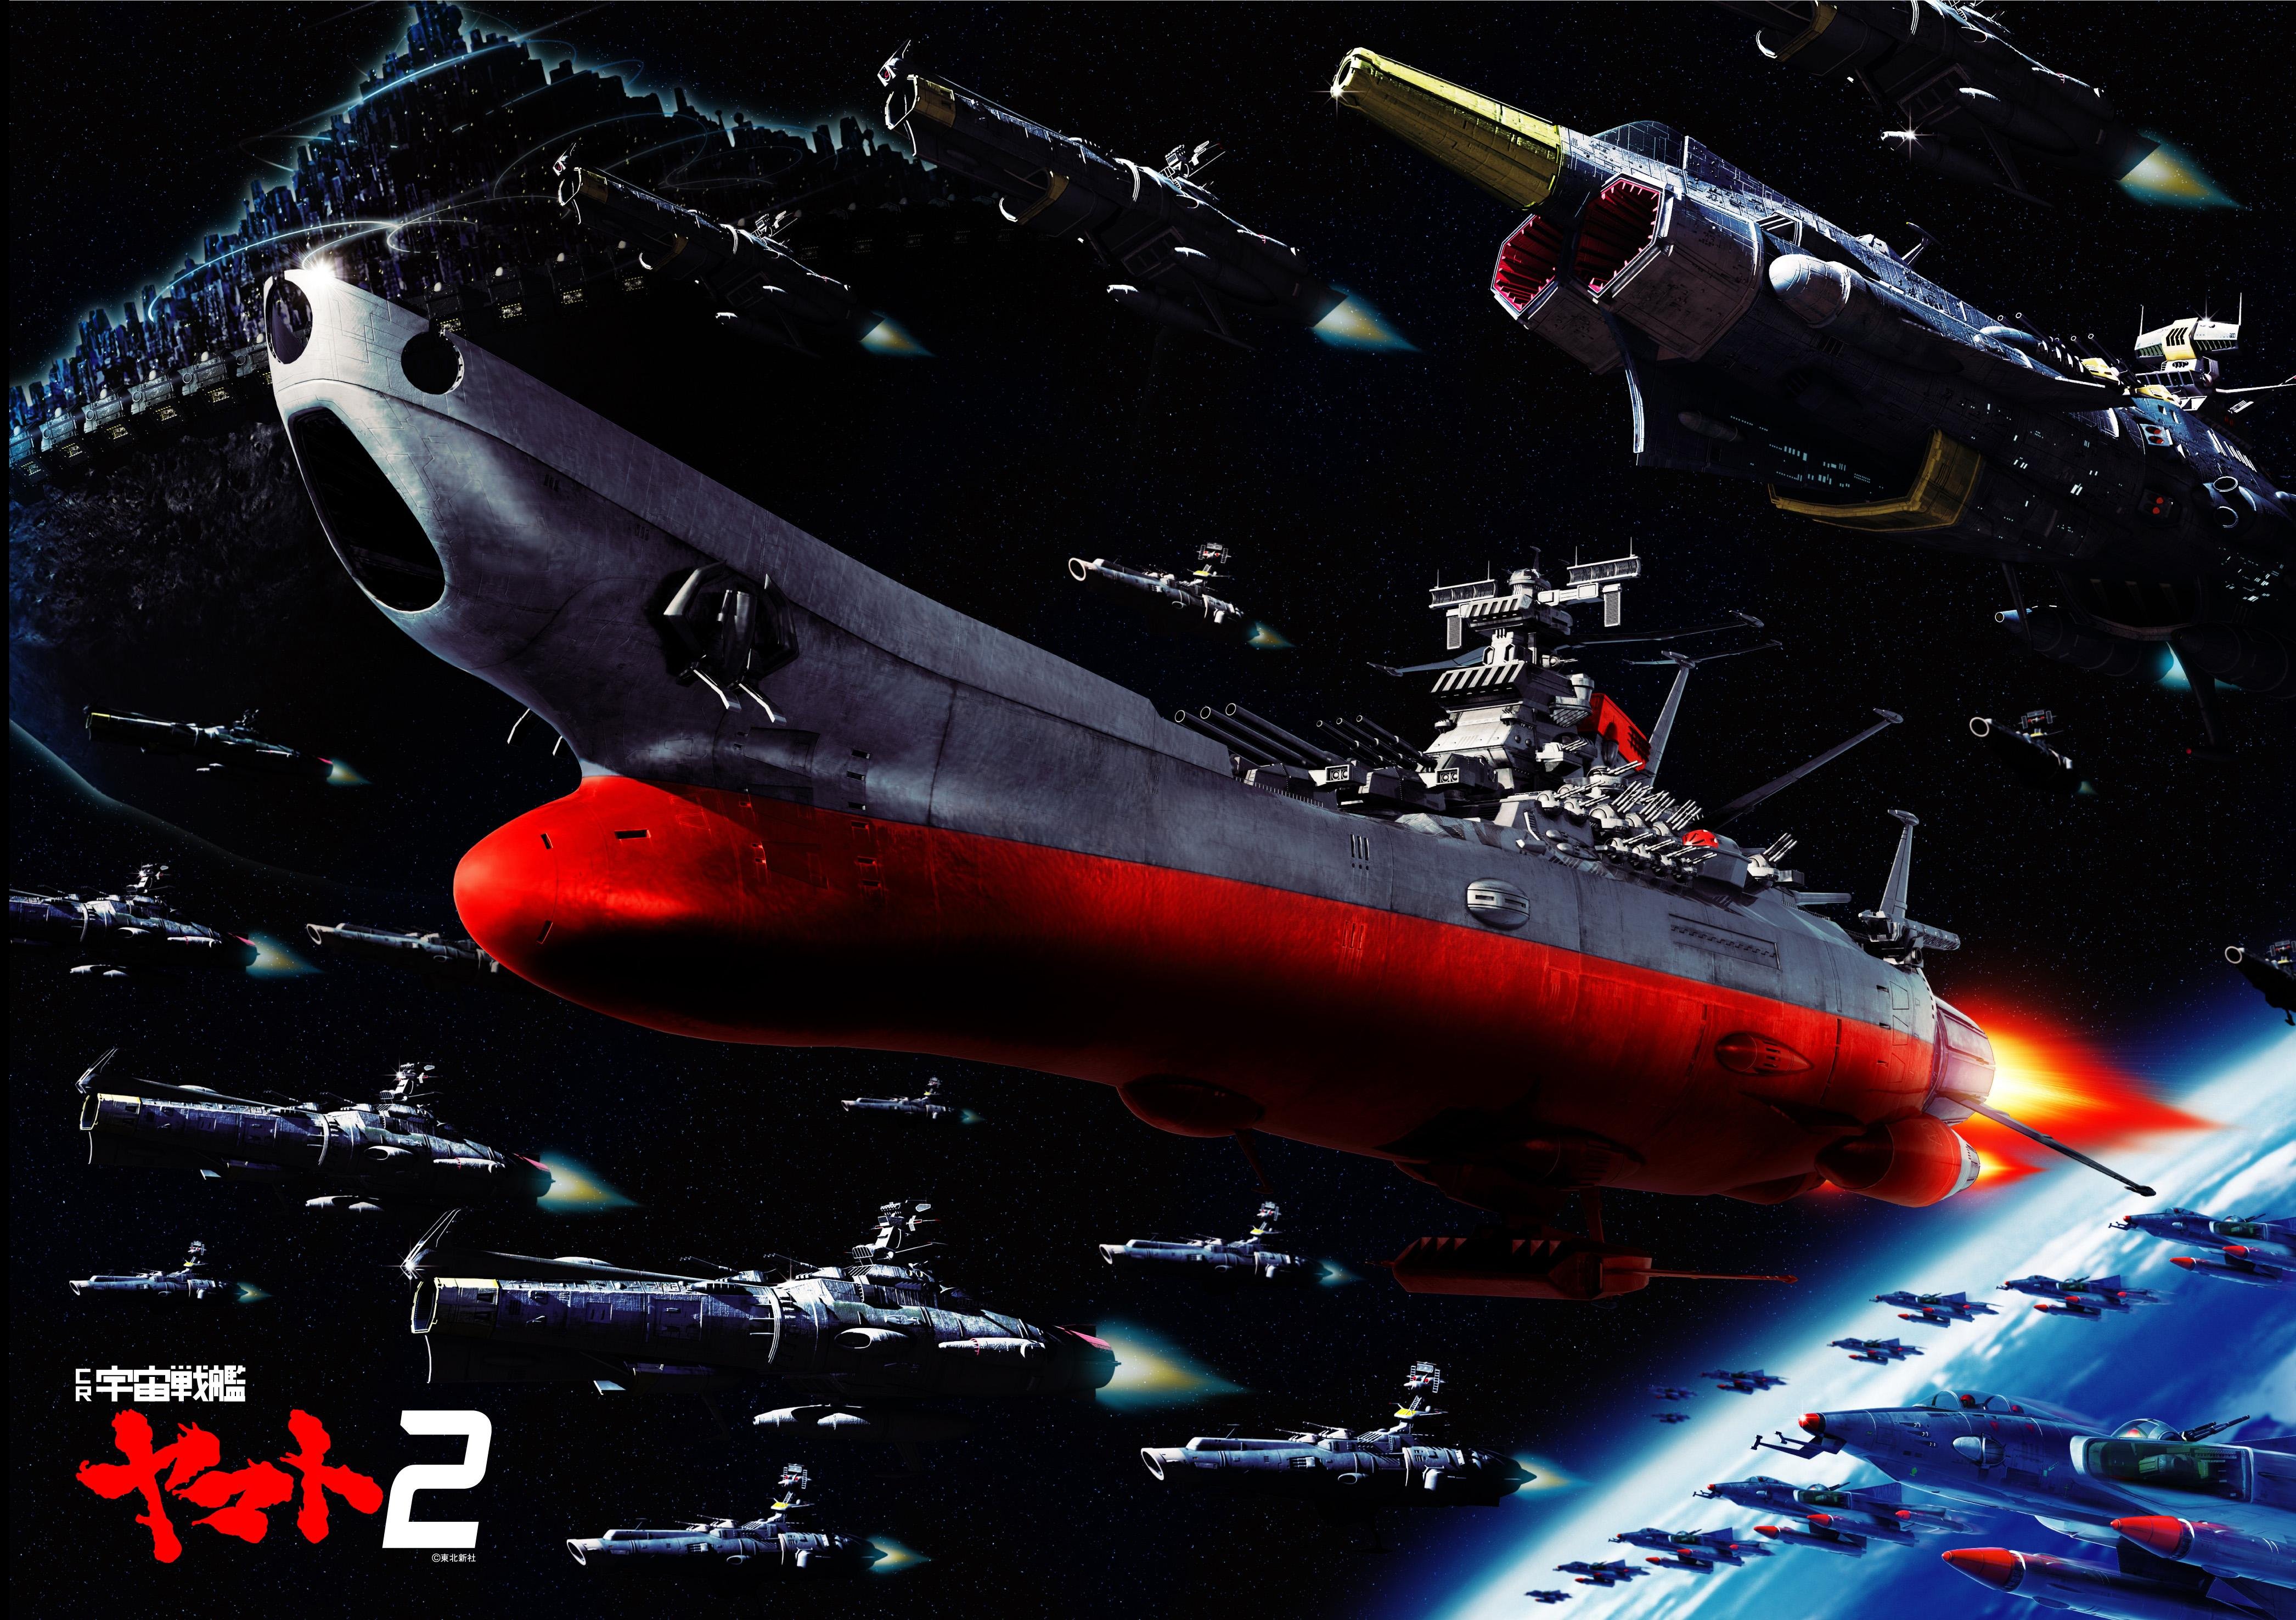 Starblazers Space Battleship Yamato wallpaper 4184x2952 334025